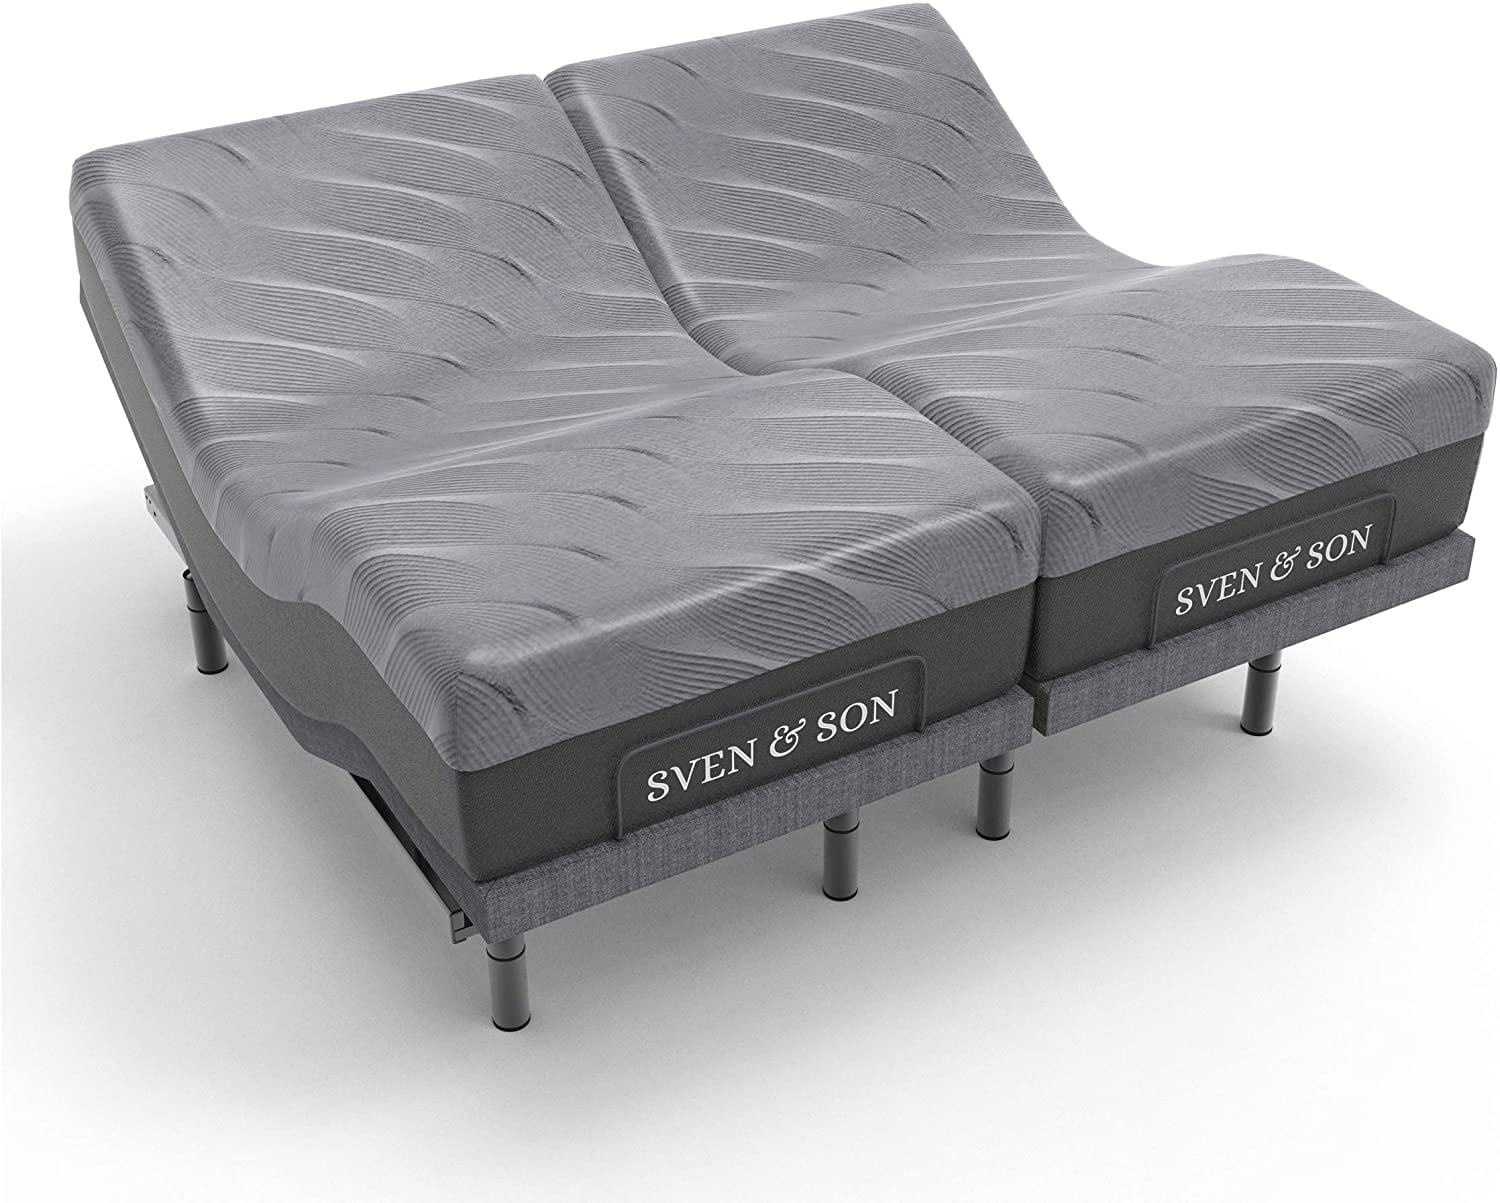 Sven Son Split King Adjustable Bed, Best Adjustable Bed Frame